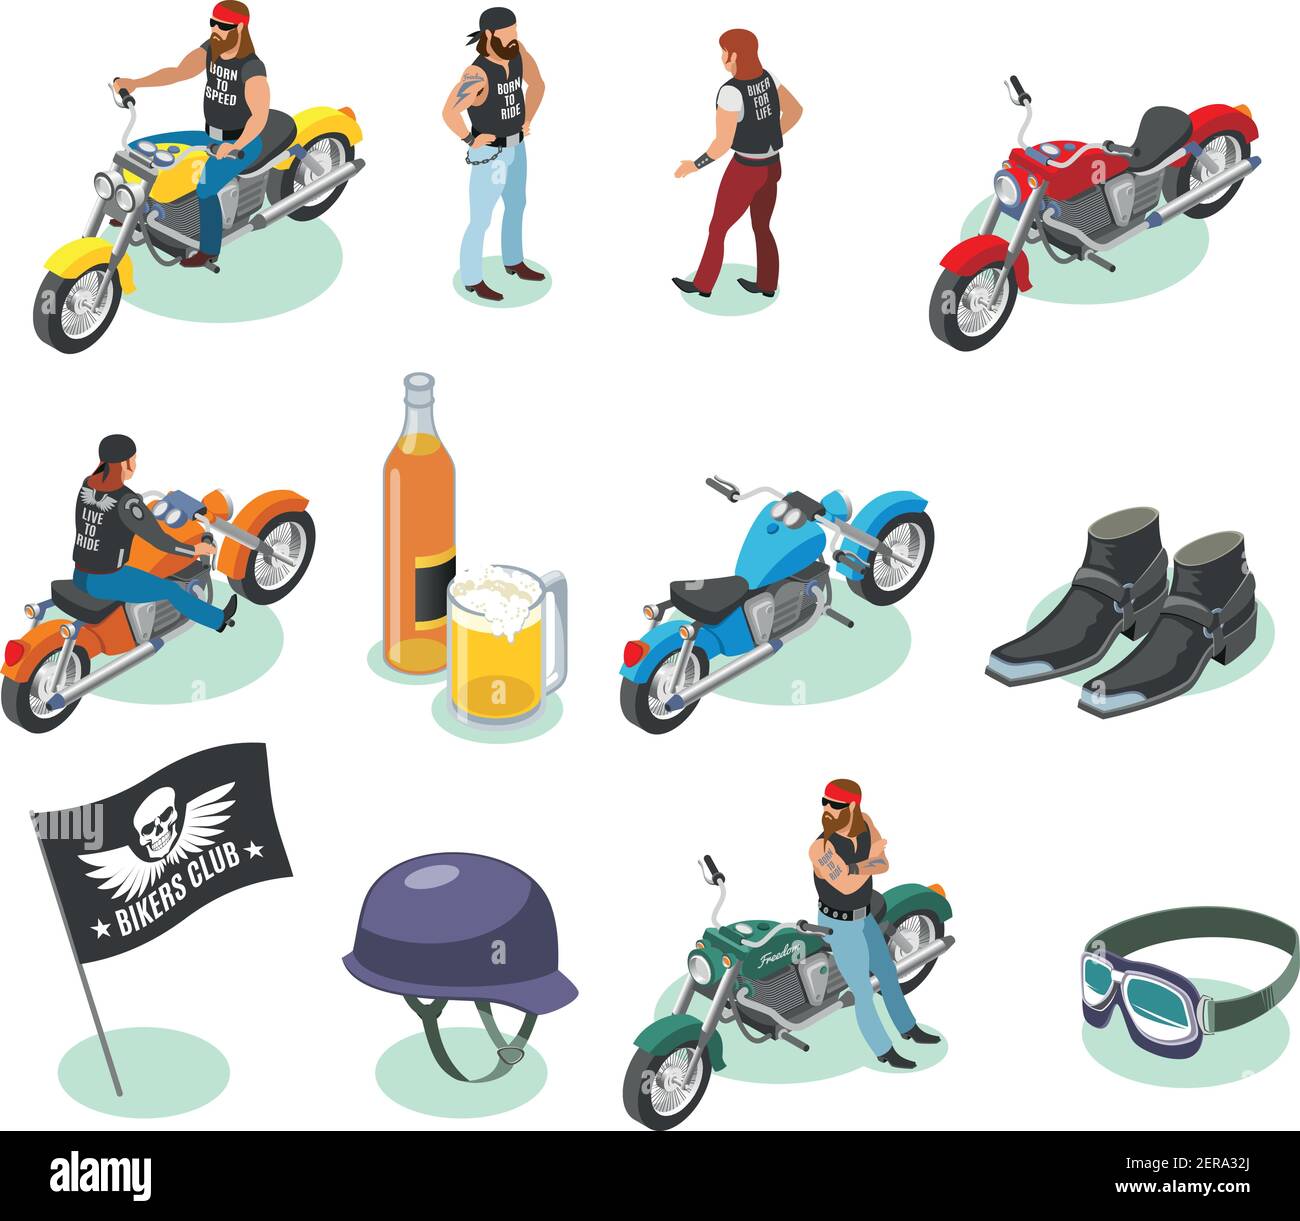 Colección de iconos isométricos de bikers de personajes humanos aislados e imágenes de motocicletas cerveza y artículos de moda vector ilustración Ilustración del Vector